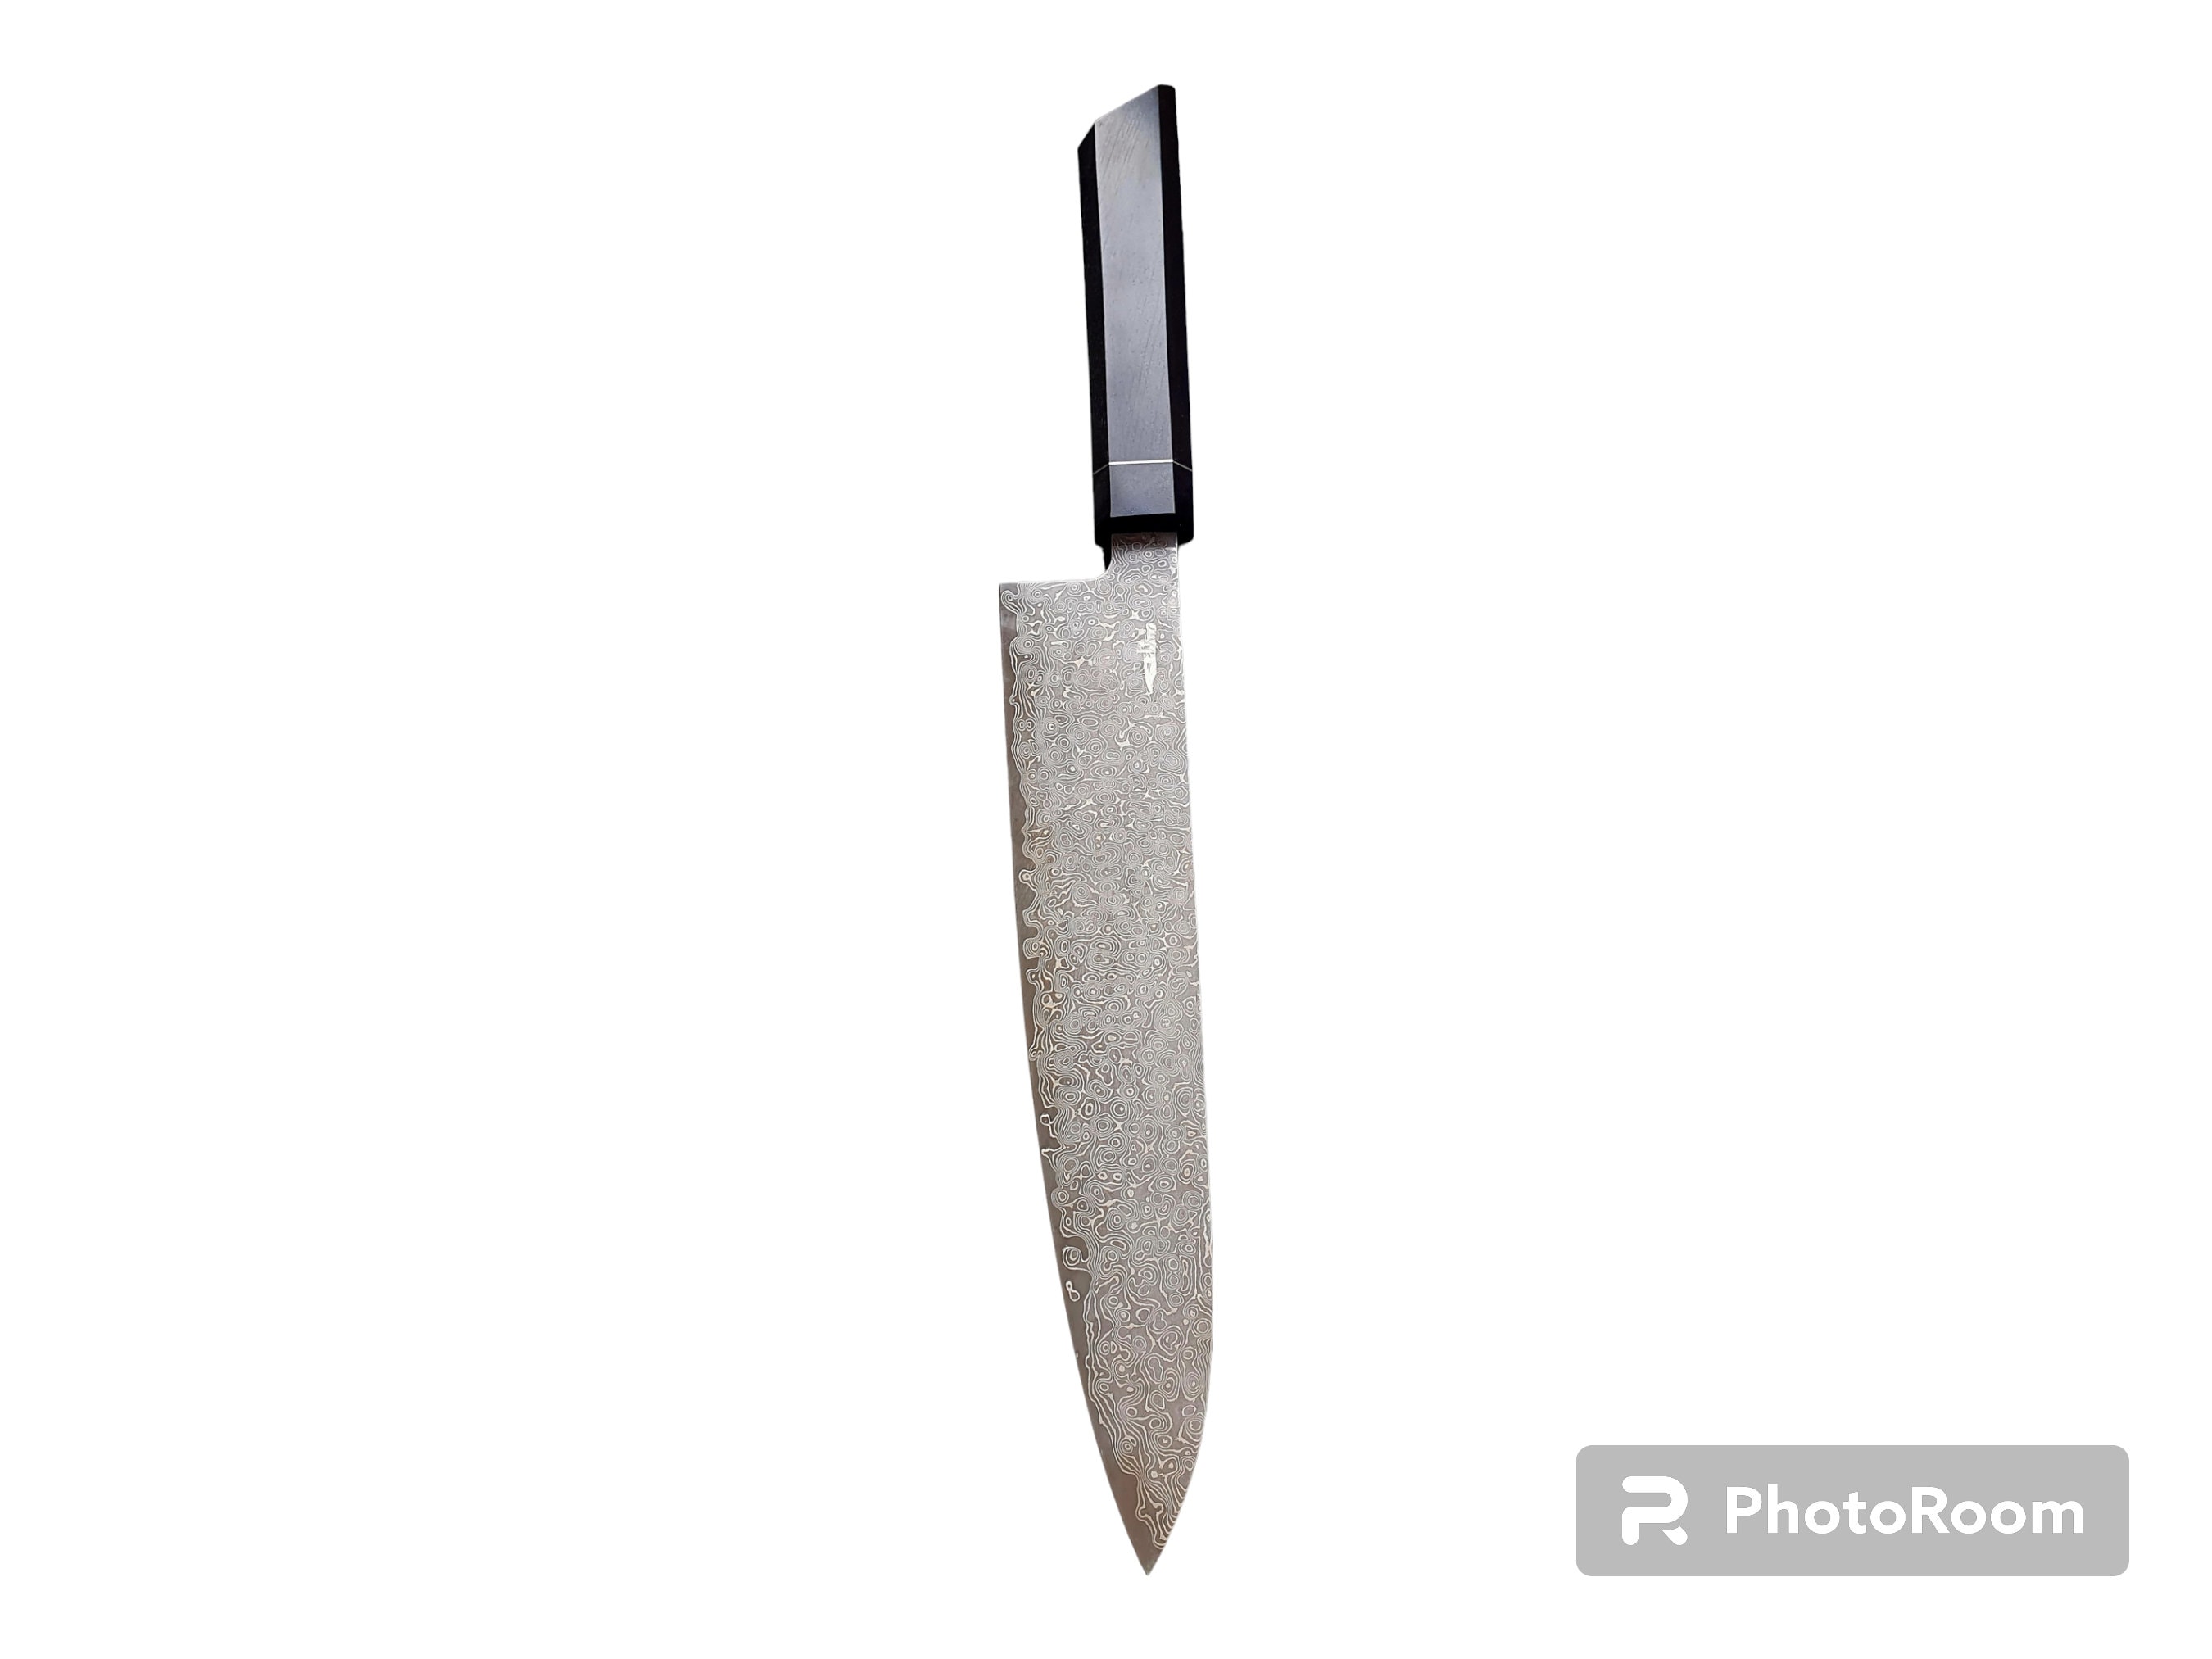 Wood Carving Knife, Long wide blade, Skew edge, Hornbeam handle